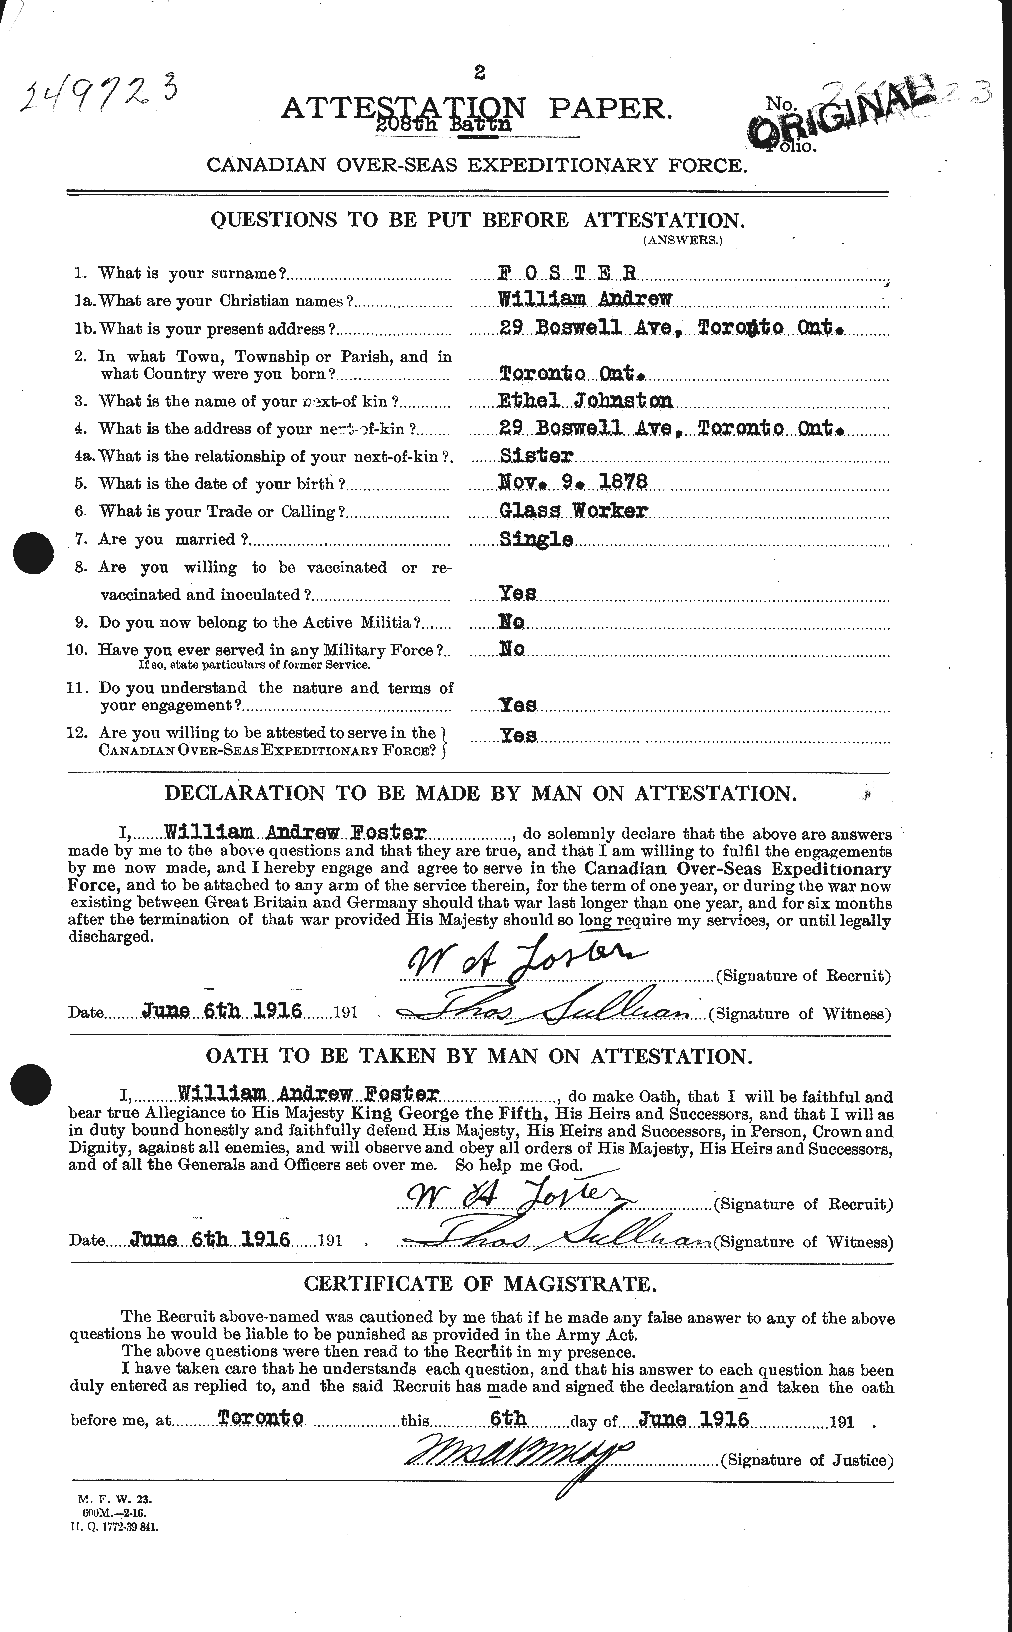 Dossiers du Personnel de la Première Guerre mondiale - CEC 328728a